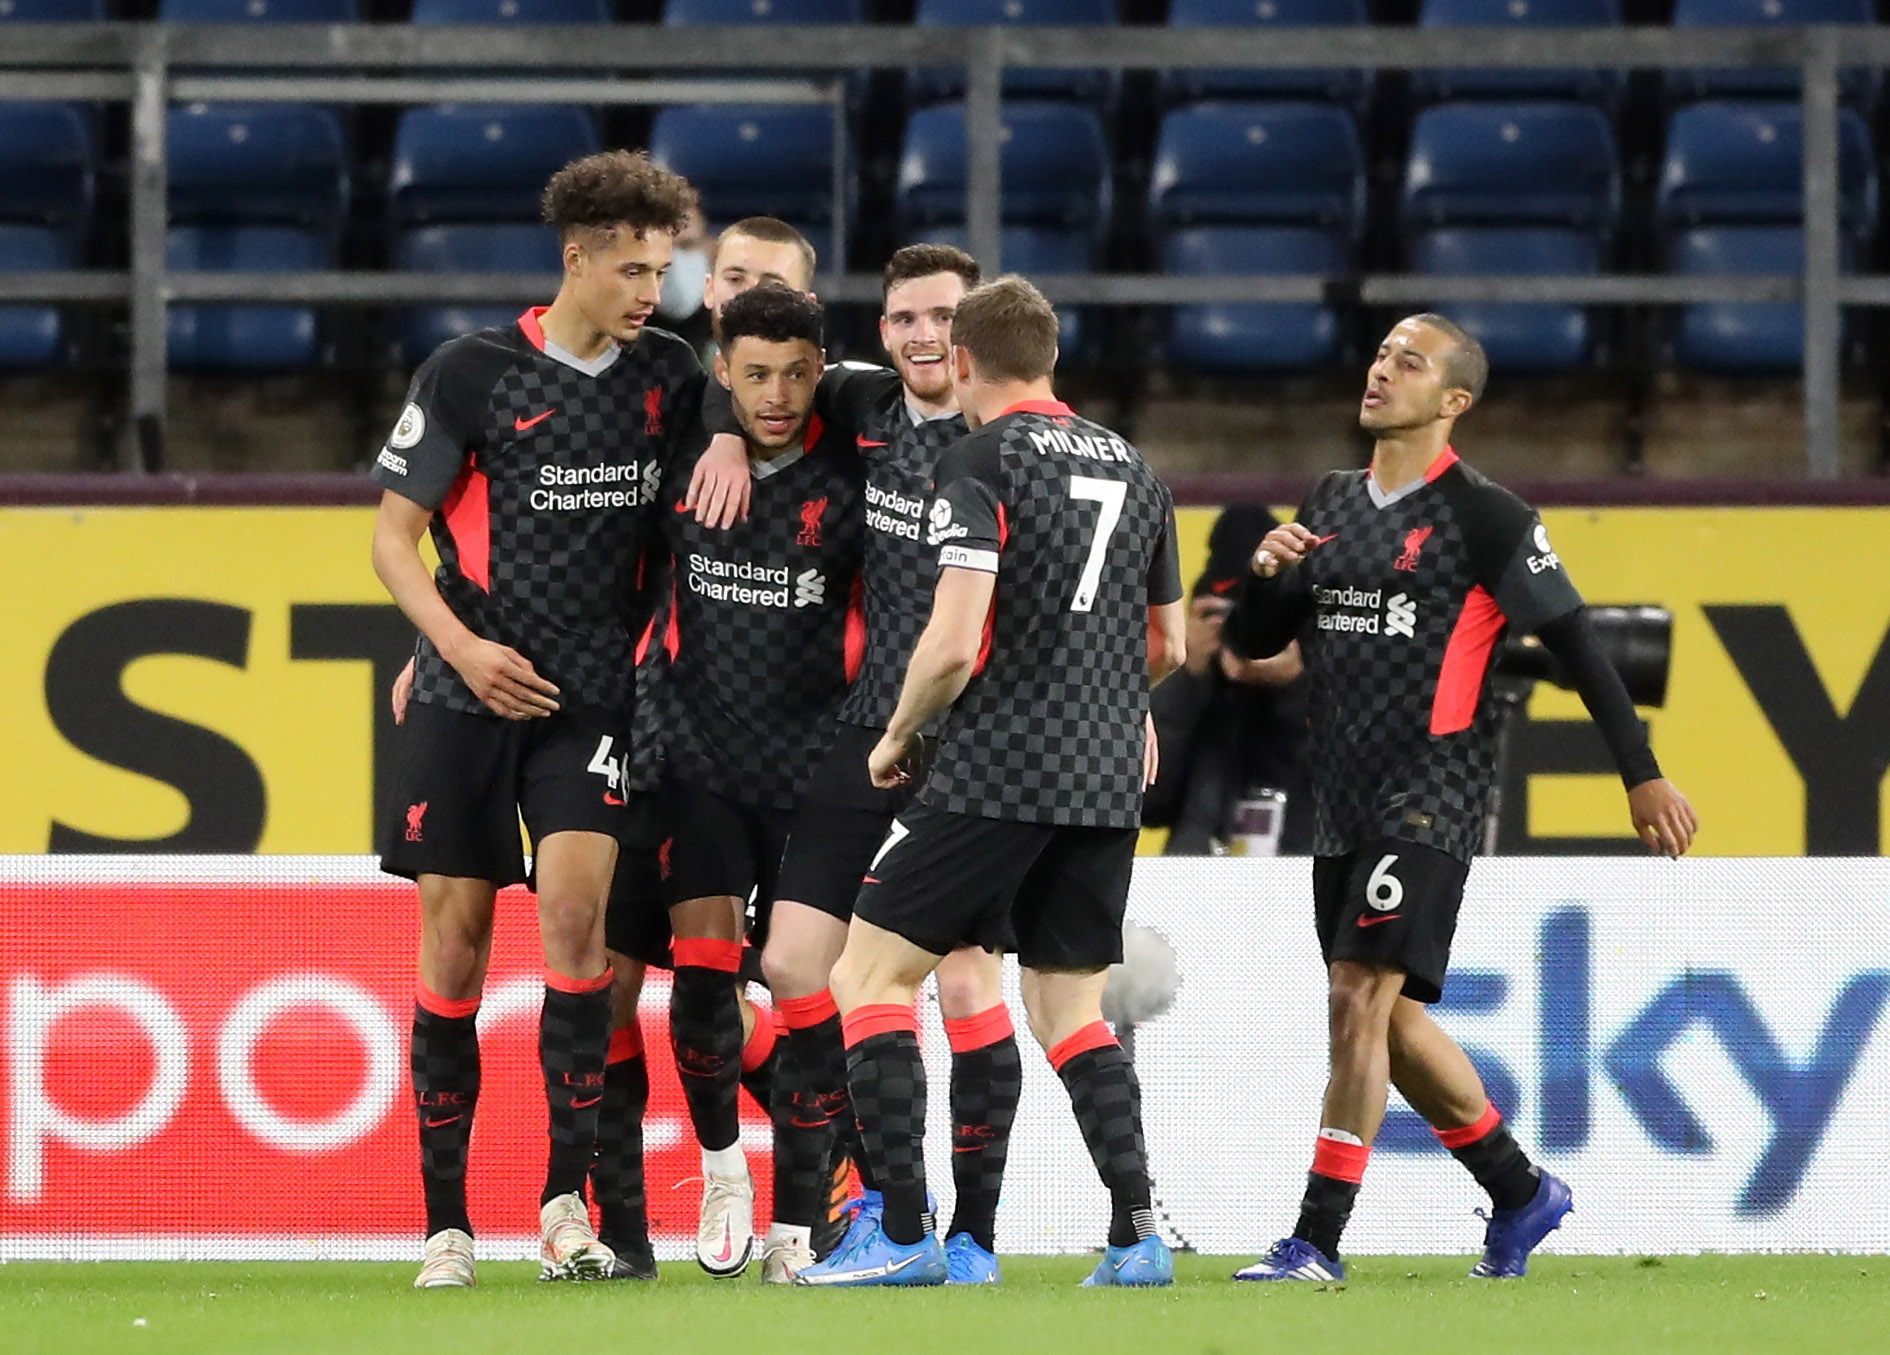 Liverpool's Alex Oxlade-Chamberlain celebrates scoring their third goal with teammates